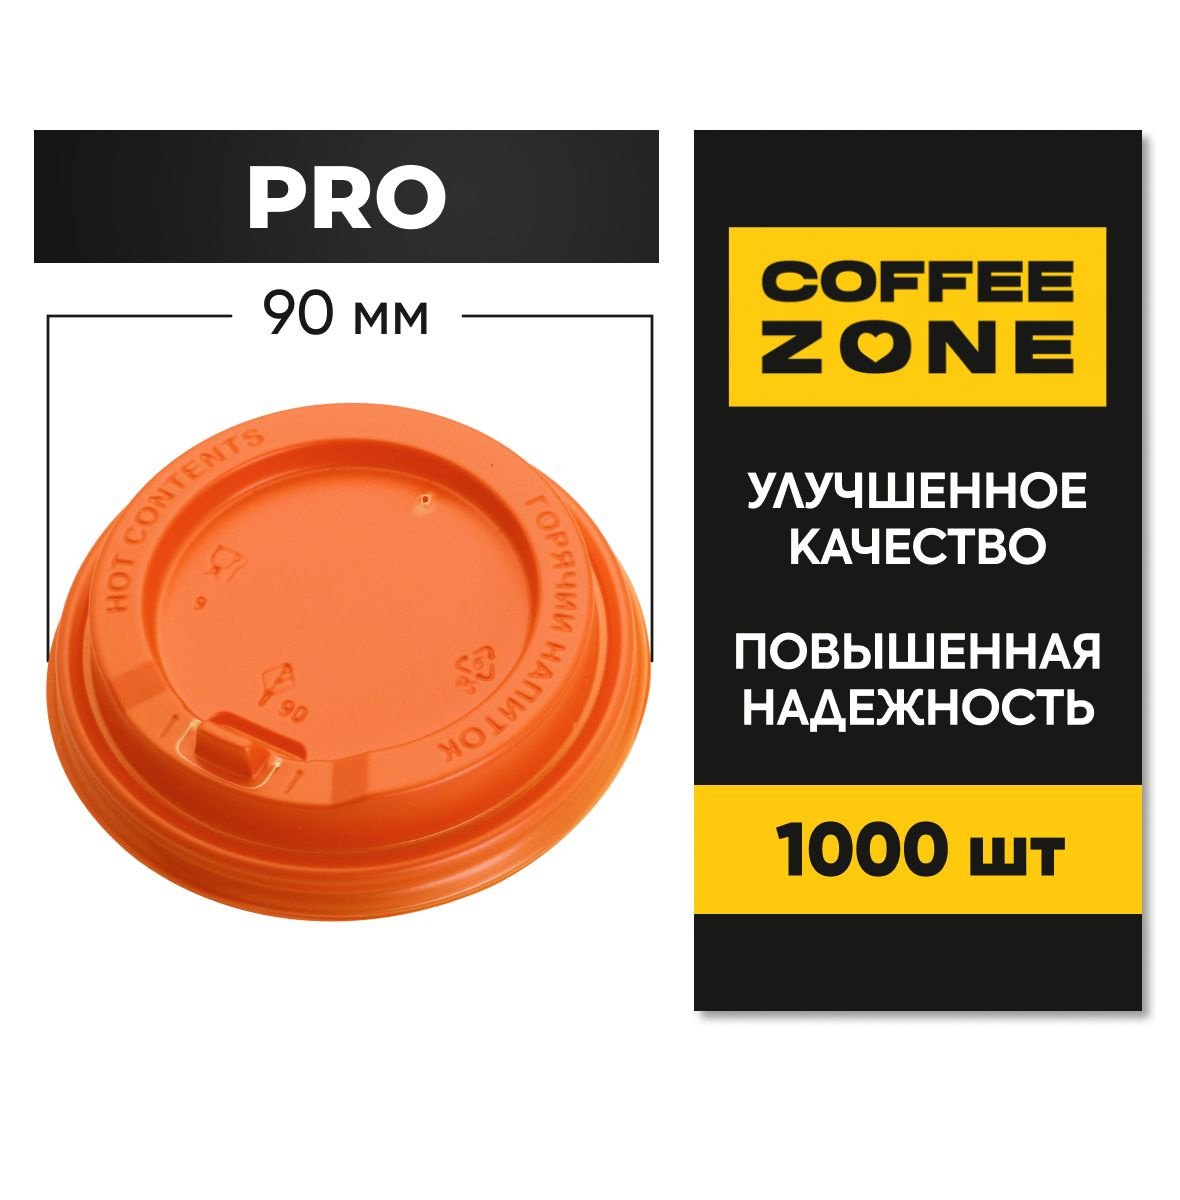 PRO Оранжевые 90 мм / 1000 штук одноразовые c клапаном (откидным питейником) пищевые пластиковые повышенной прочности от COFFEE ZONE для стаканов 300 мл - 400 мл